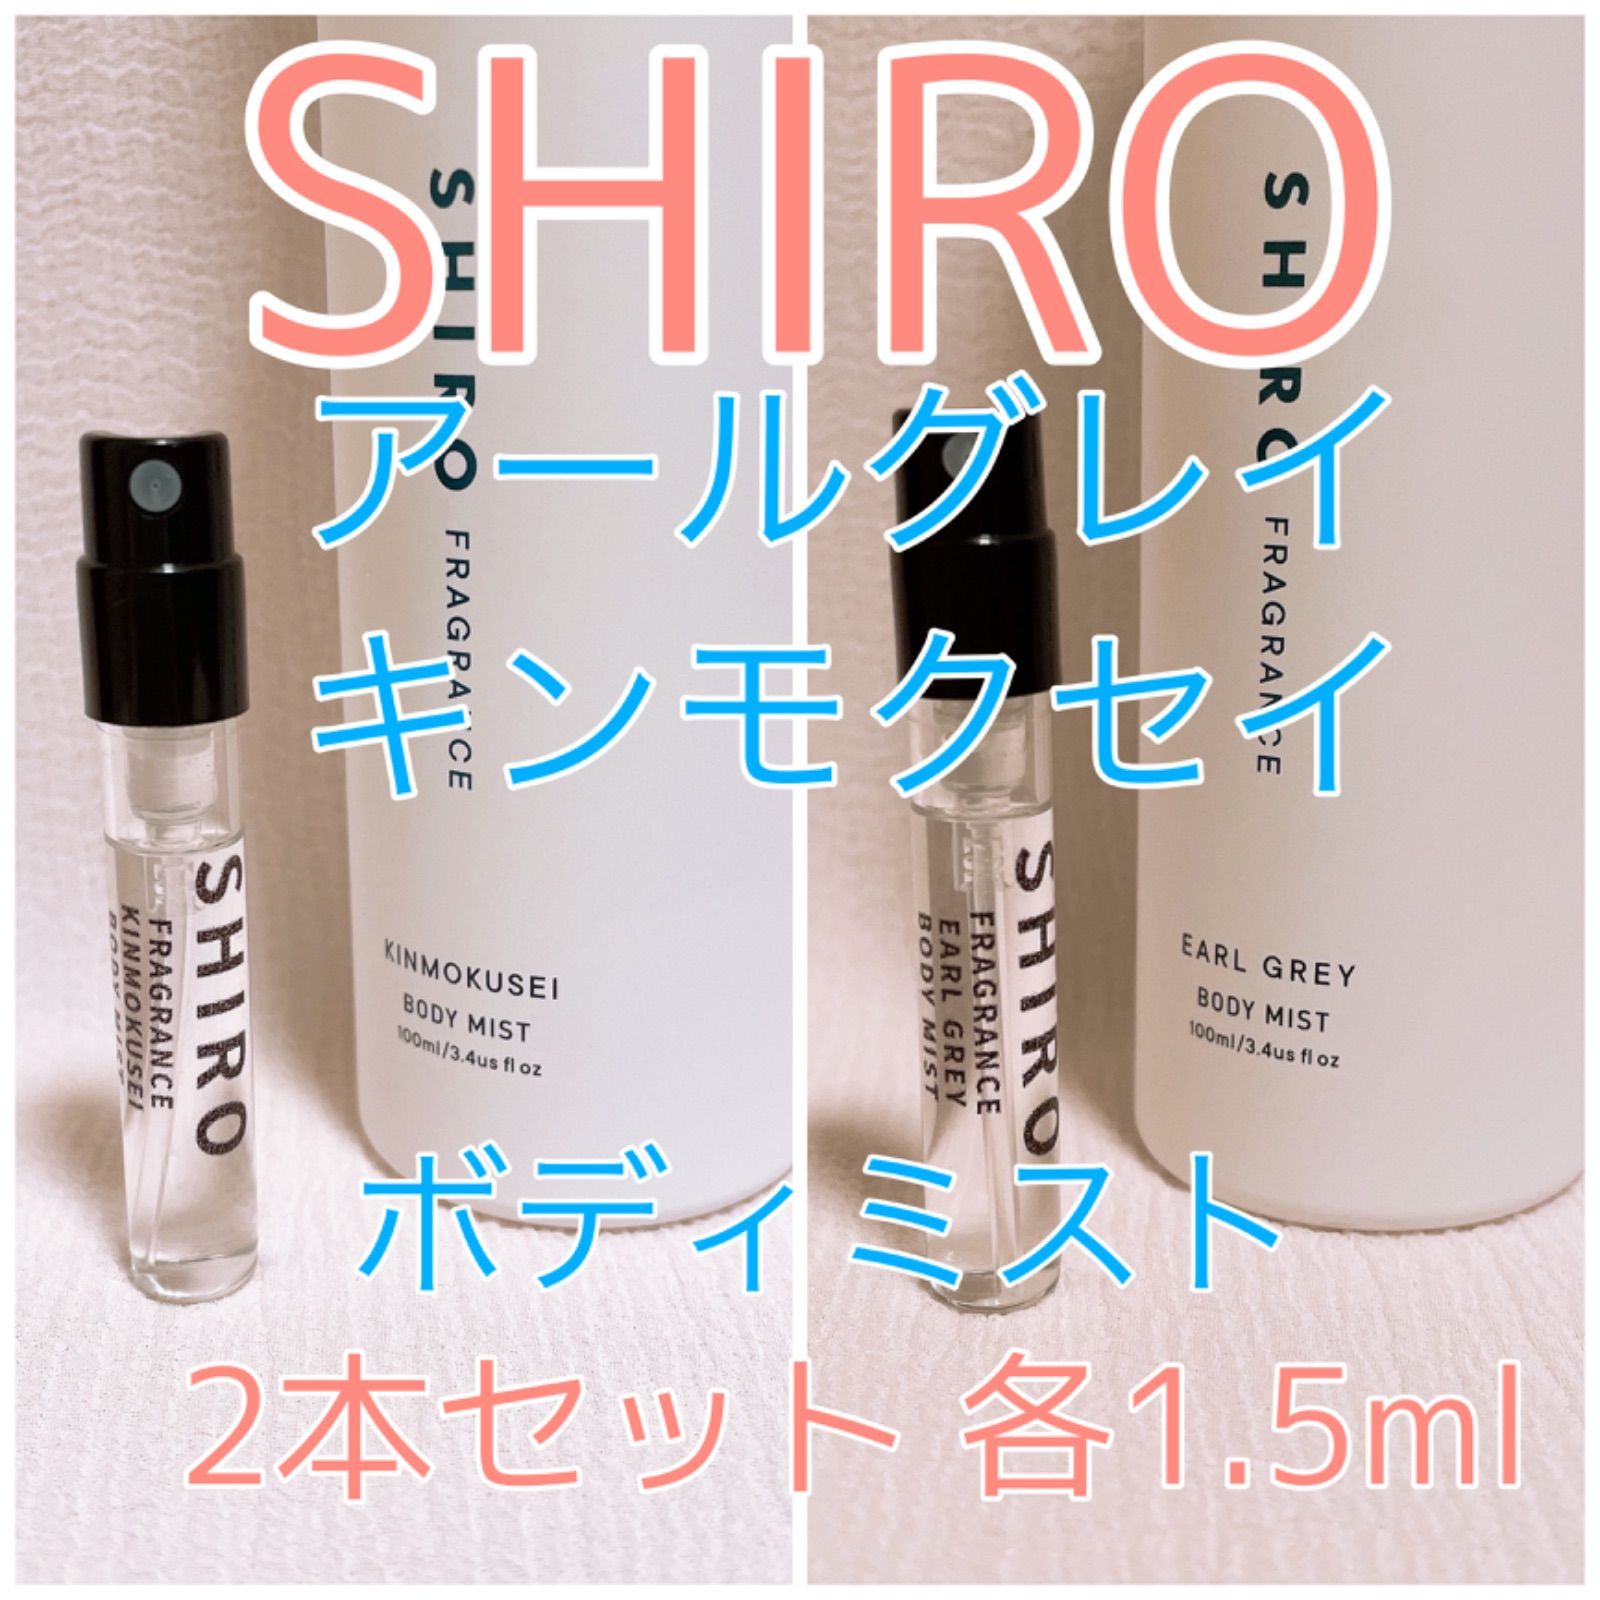 SHIRO シロ 香水 ボディーミスト オードパルファン 3本セット 春先取り 